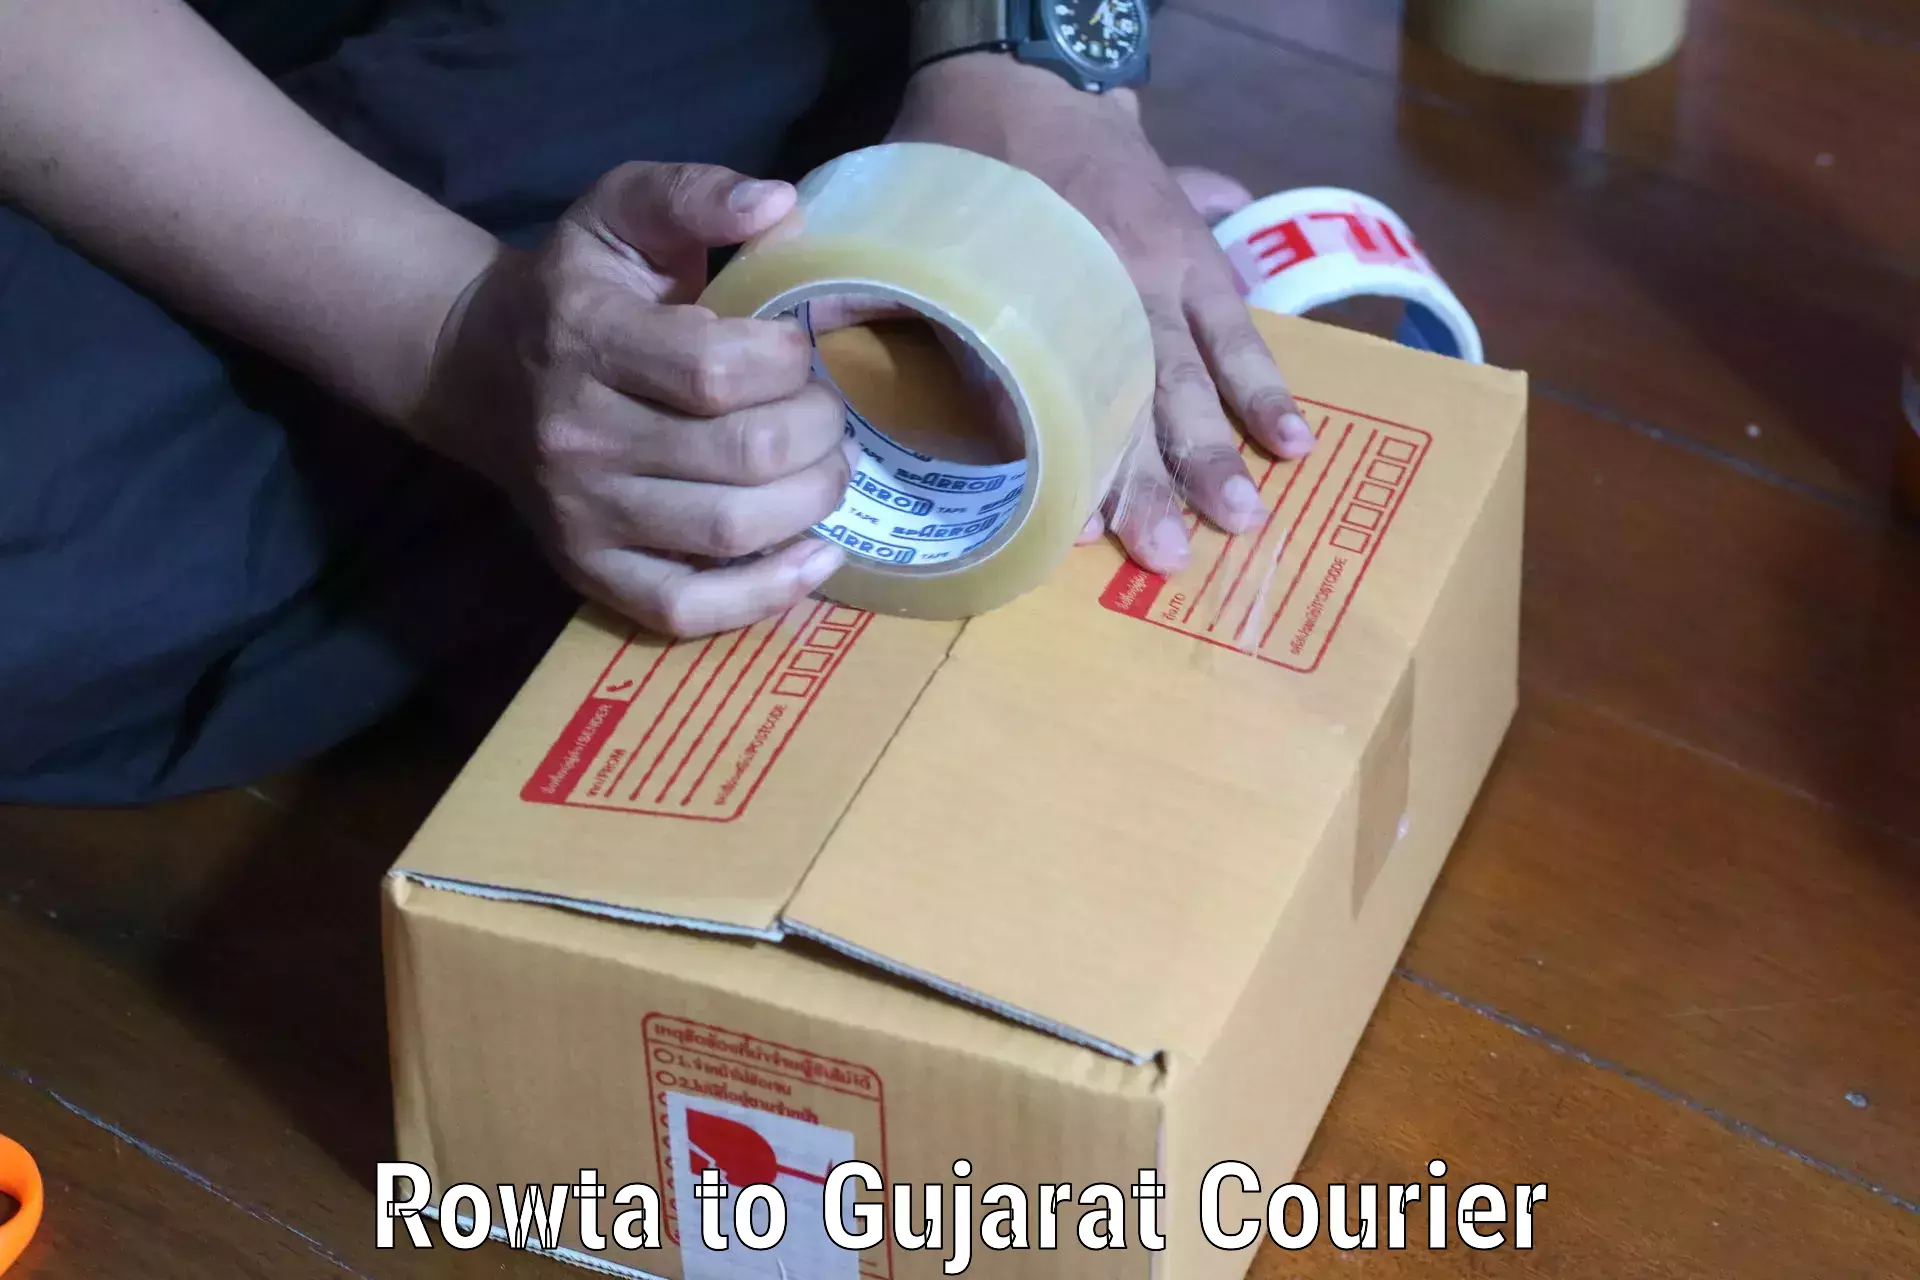 24/7 courier service Rowta to Idar